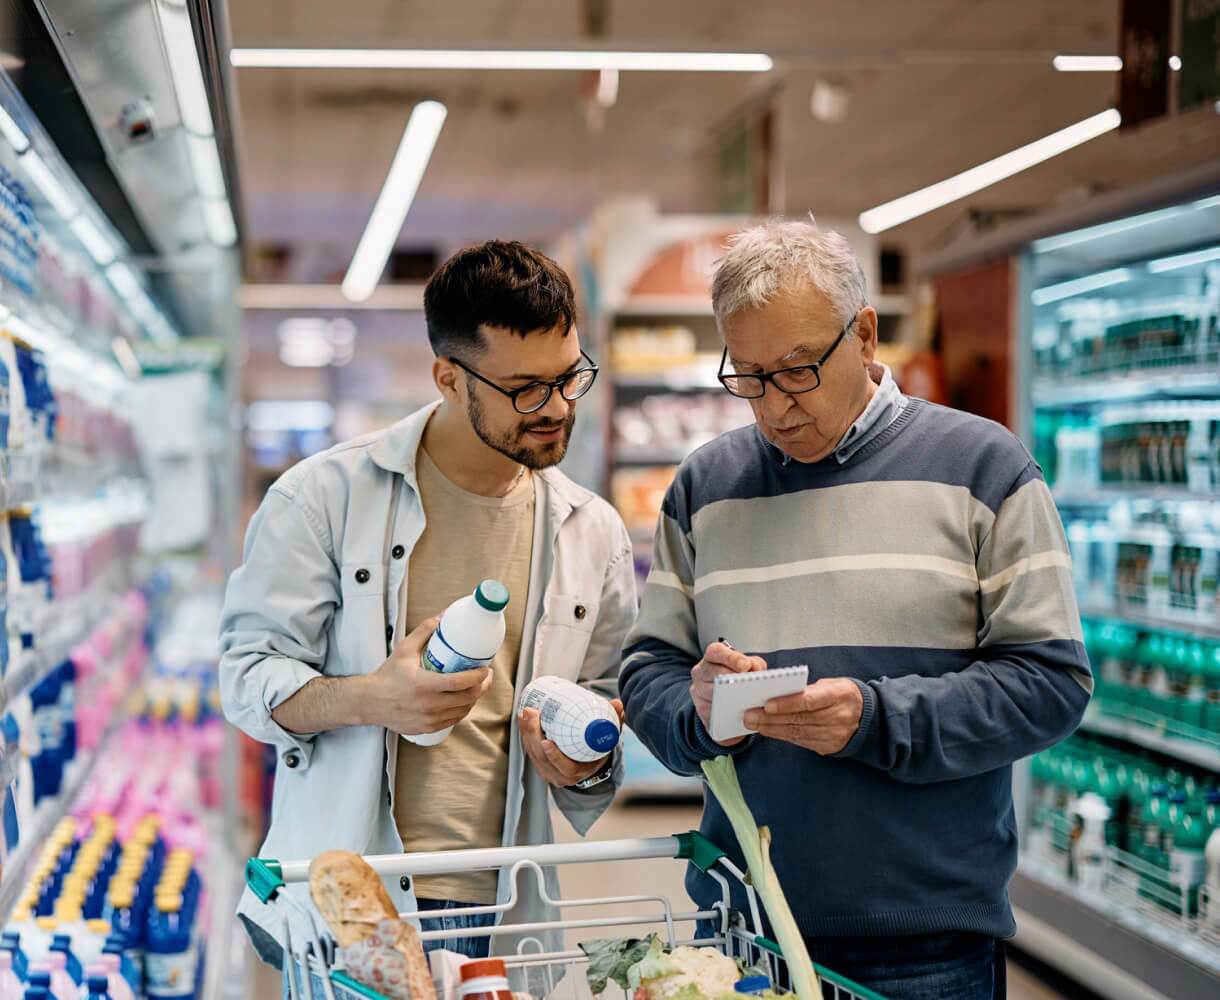 Un homme âgé et un jeune homme comparent des produits dans un rayon de supermarché, le jeune homme tenant une bouteille et le plus âgé consultant une liste.